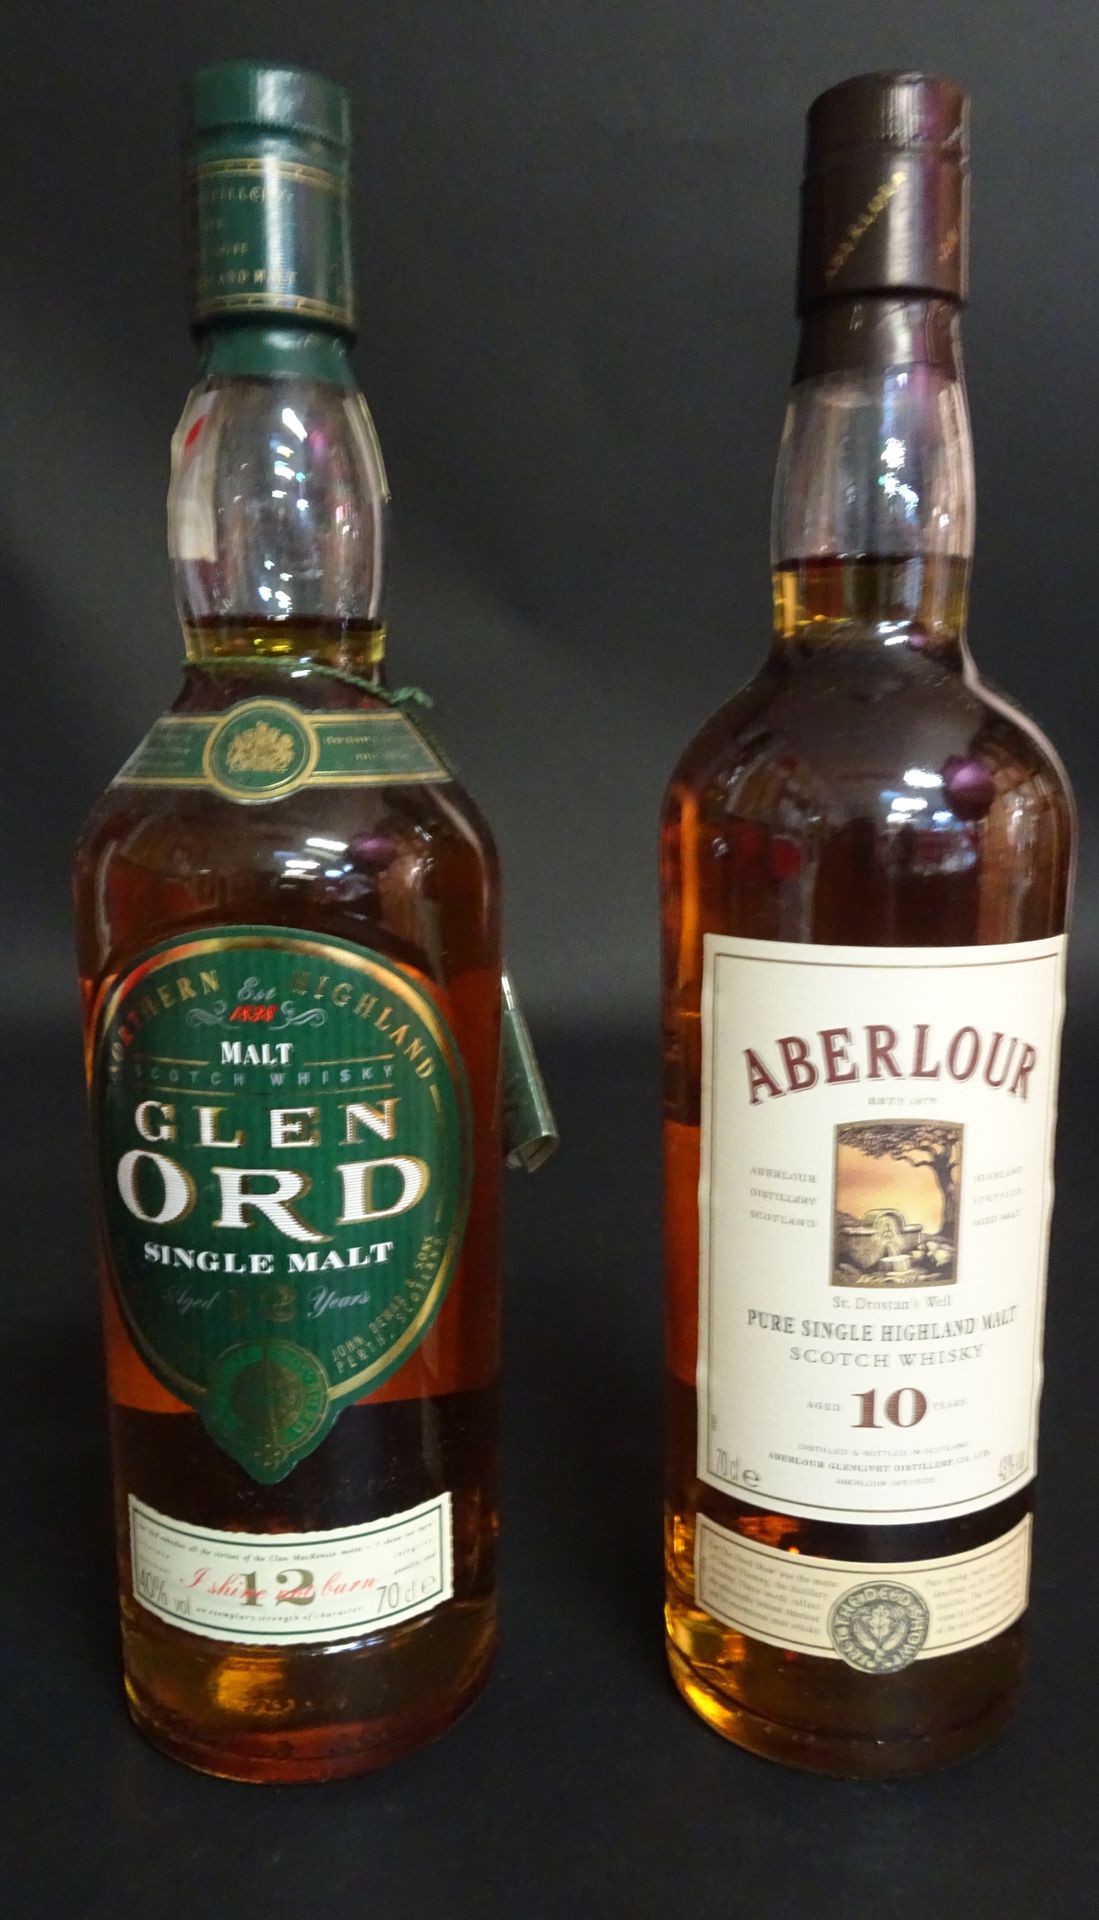 Null Glen Ord Whisky 12 anni

+ Aberlour Whisky 10 anni

2 bottiglie